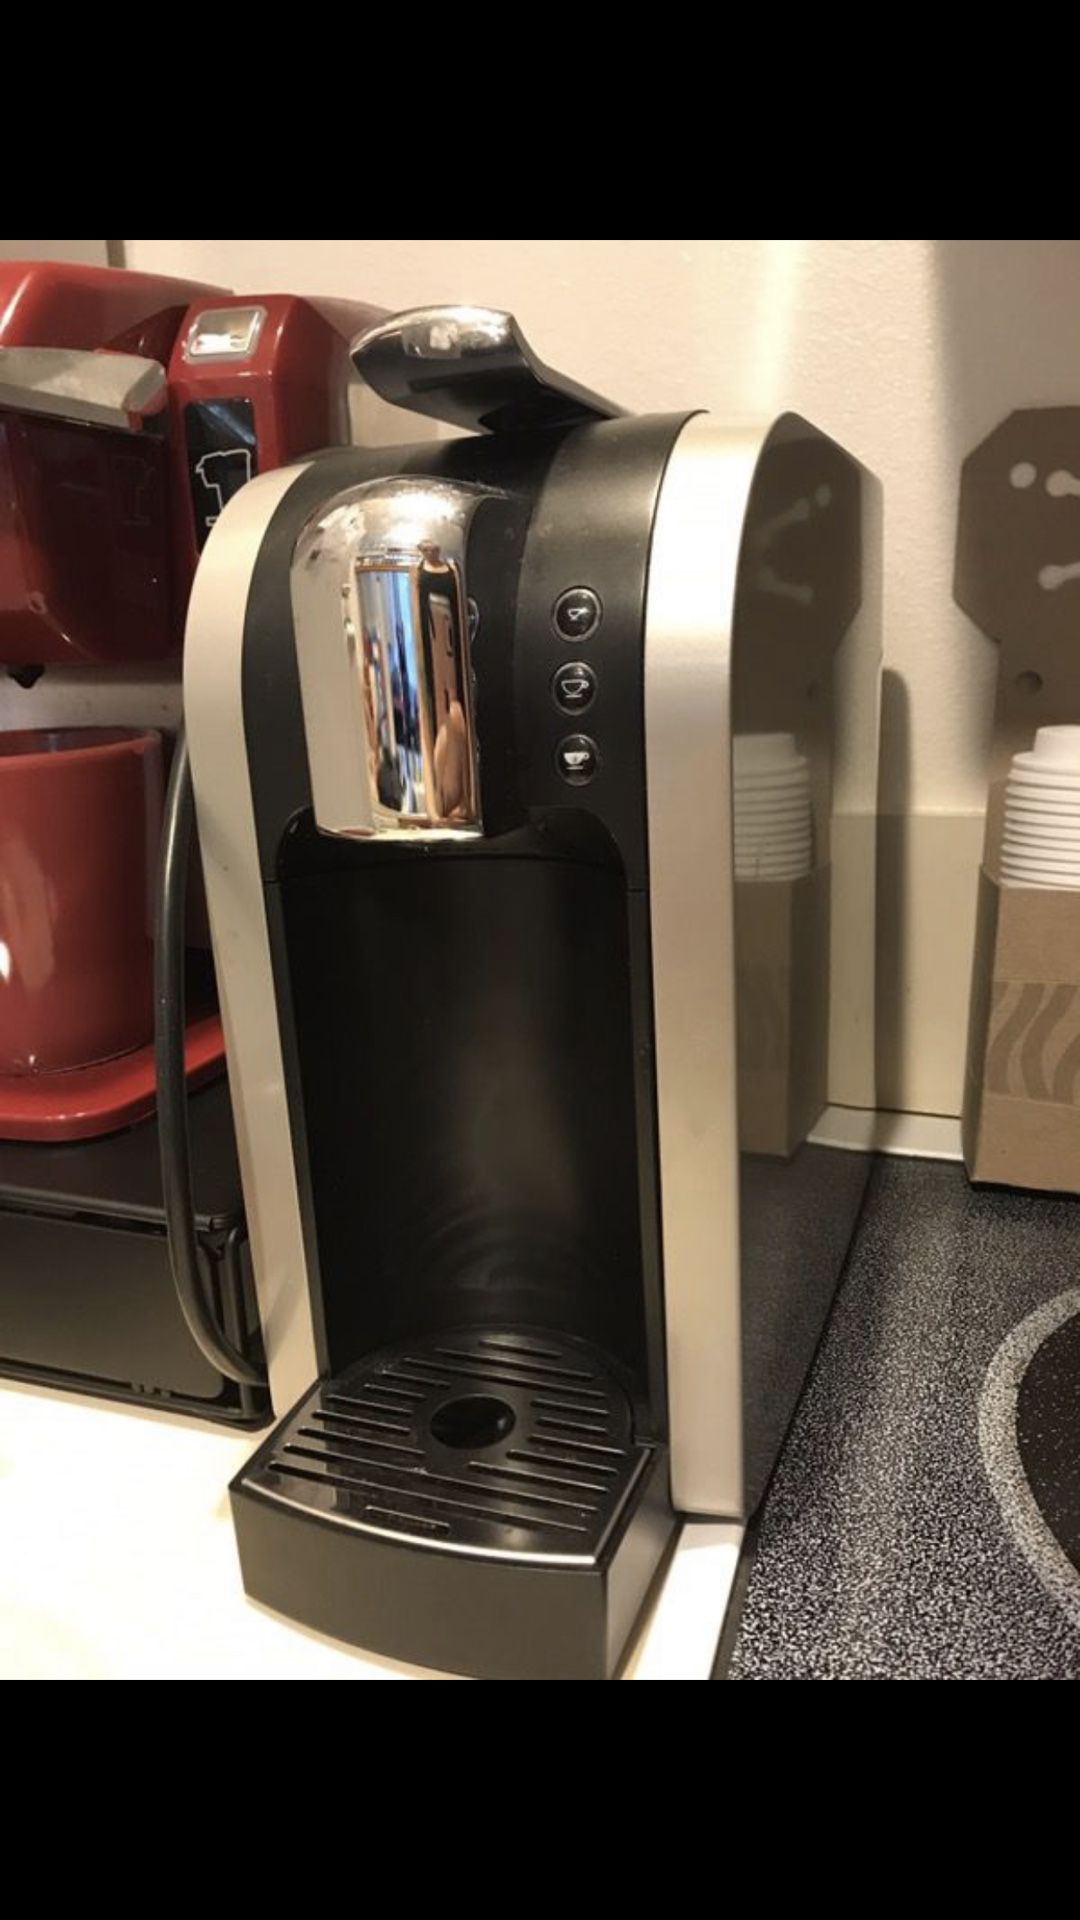 Starbucks Verismo Single-Cup Coffee Espresso Maker